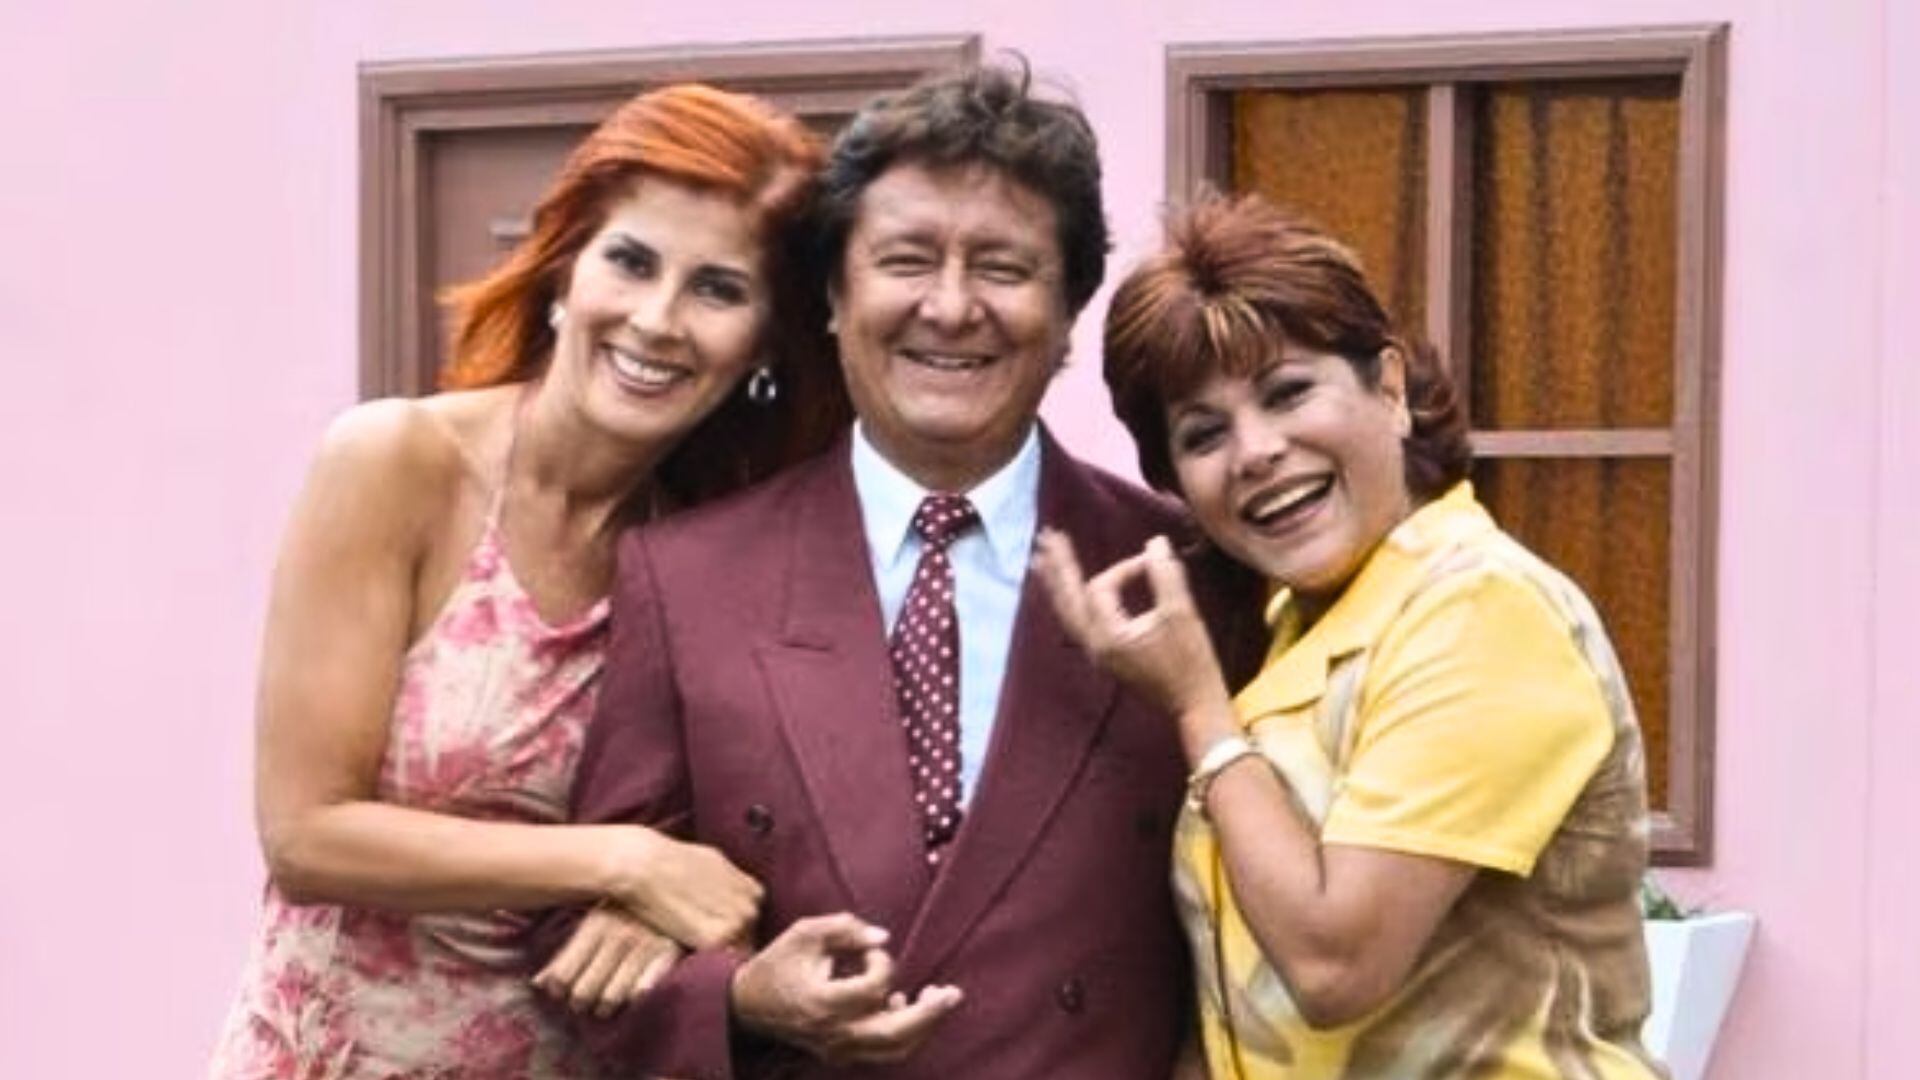 Adolfo Chuimán (Renato) junto a Aurora Aranda (Carmencita) y Olga Zumarán (Eva) en las grabaciones de "Mil Oficiones".